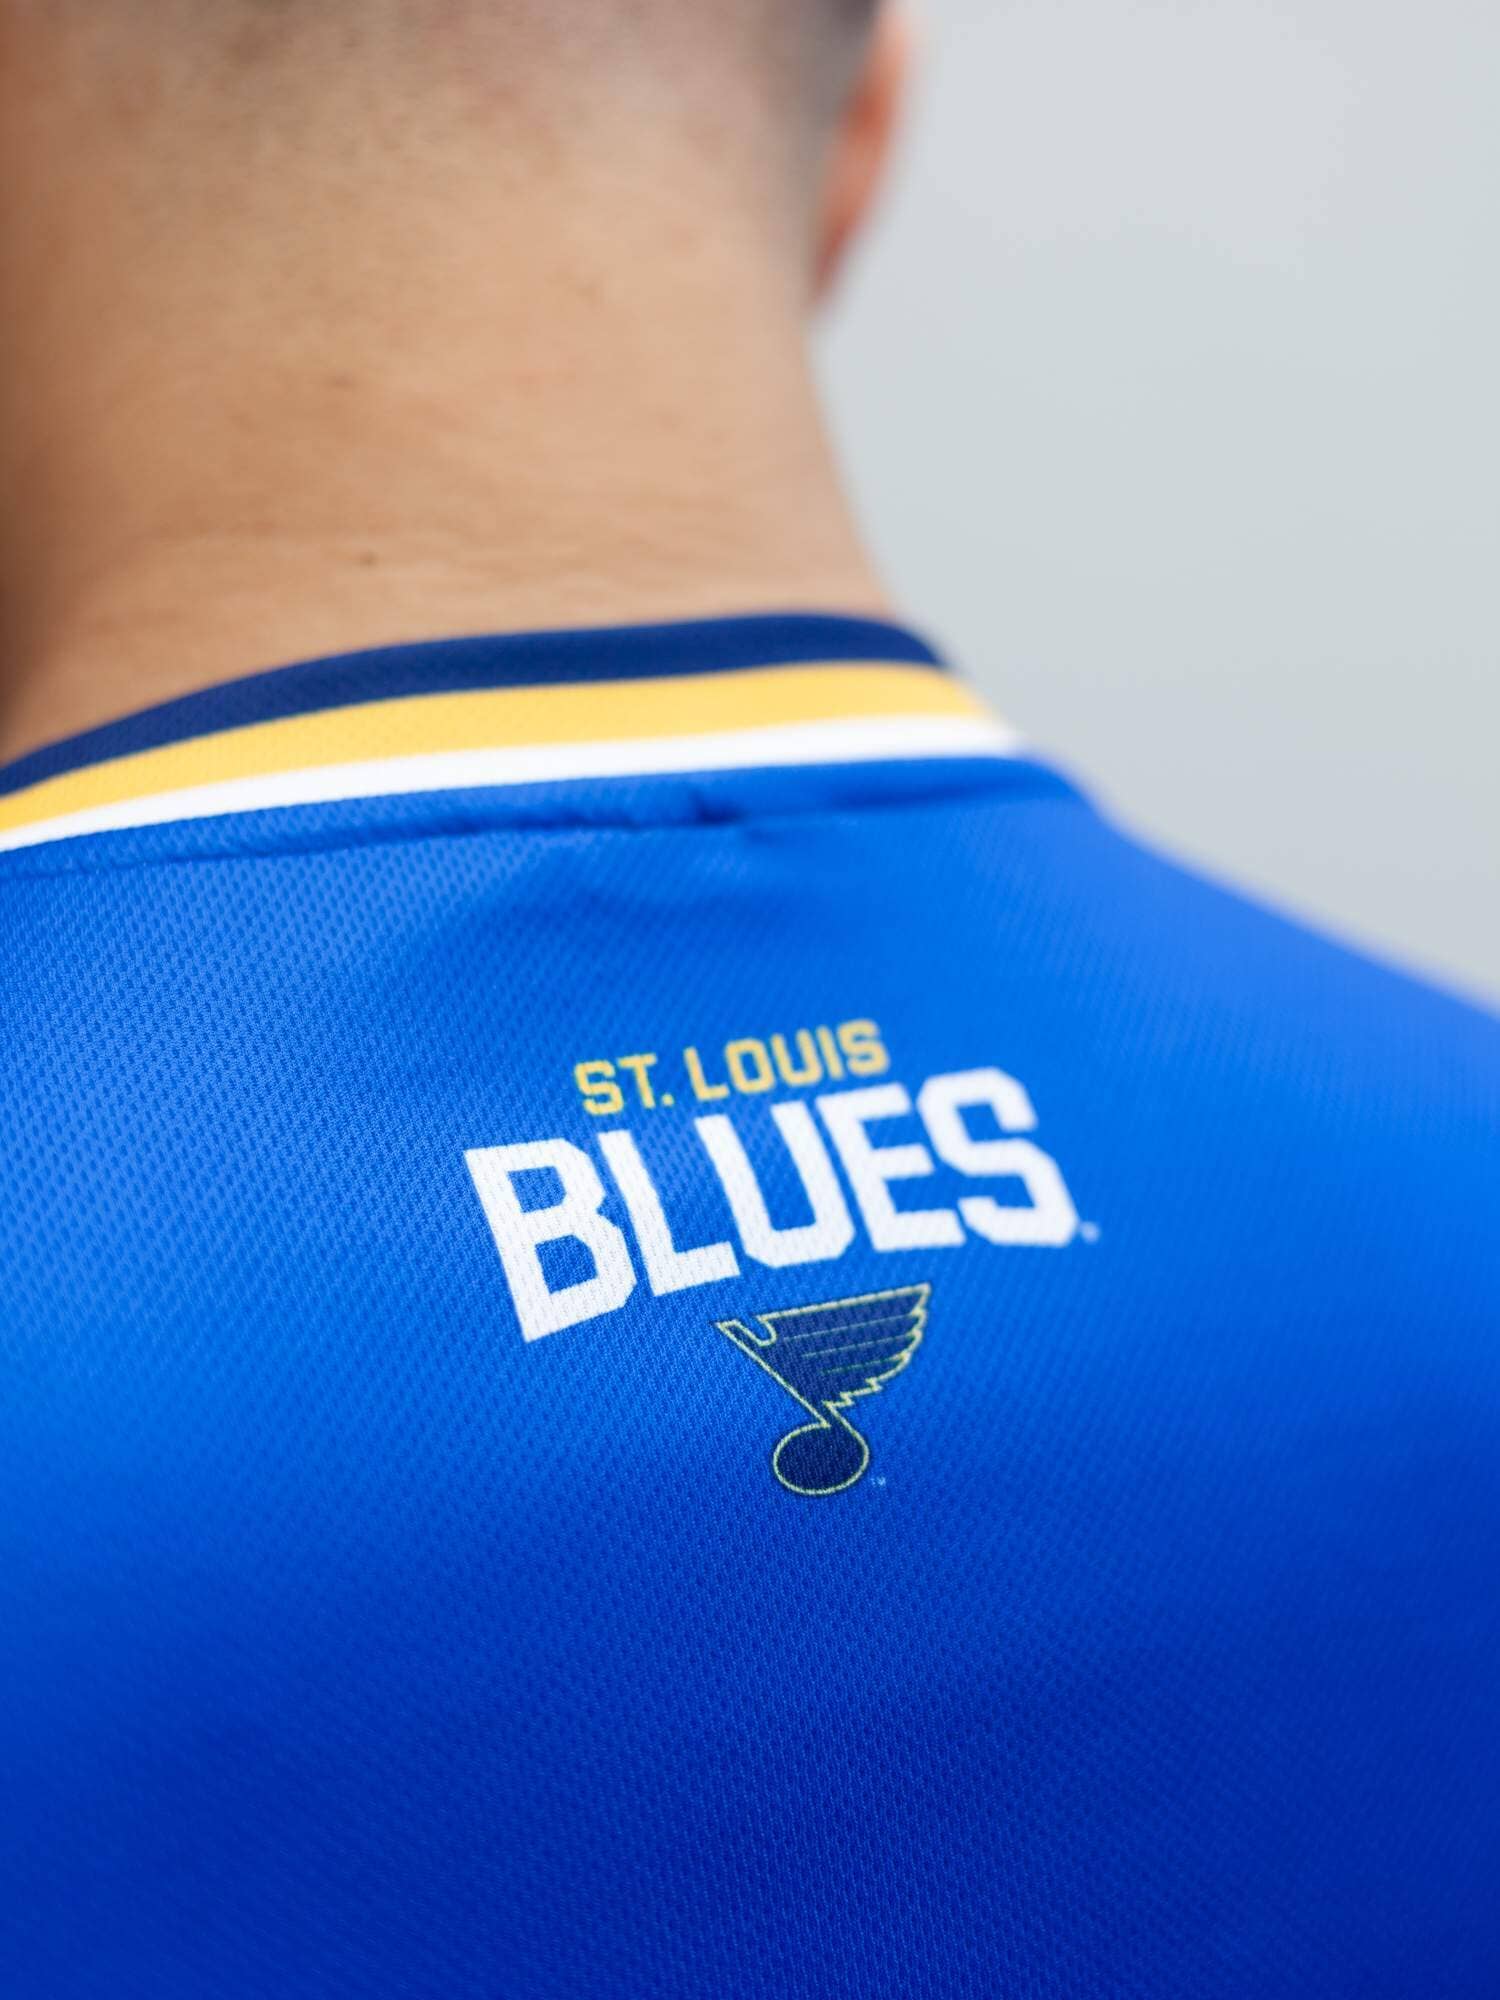 St Louis Blues Jerseys in St Louis Blues Team Shop 